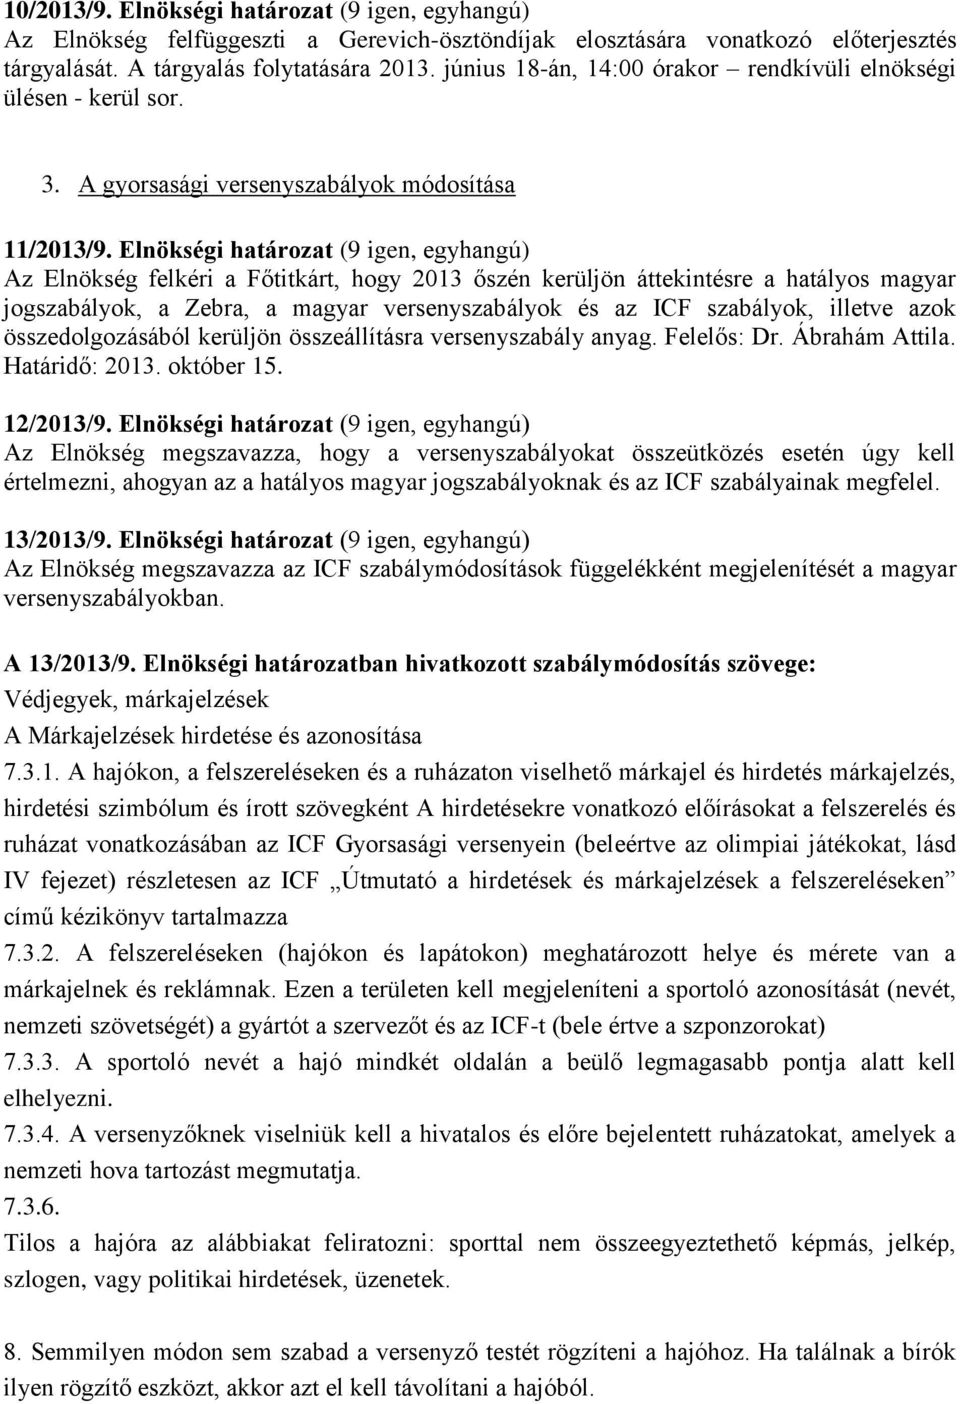 Elnökségi határozat (9 igen, egyhangú) Az Elnökség felkéri a Főtitkárt, hogy 2013 őszén kerüljön áttekintésre a hatályos magyar jogszabályok, a Zebra, a magyar versenyszabályok és az ICF szabályok,